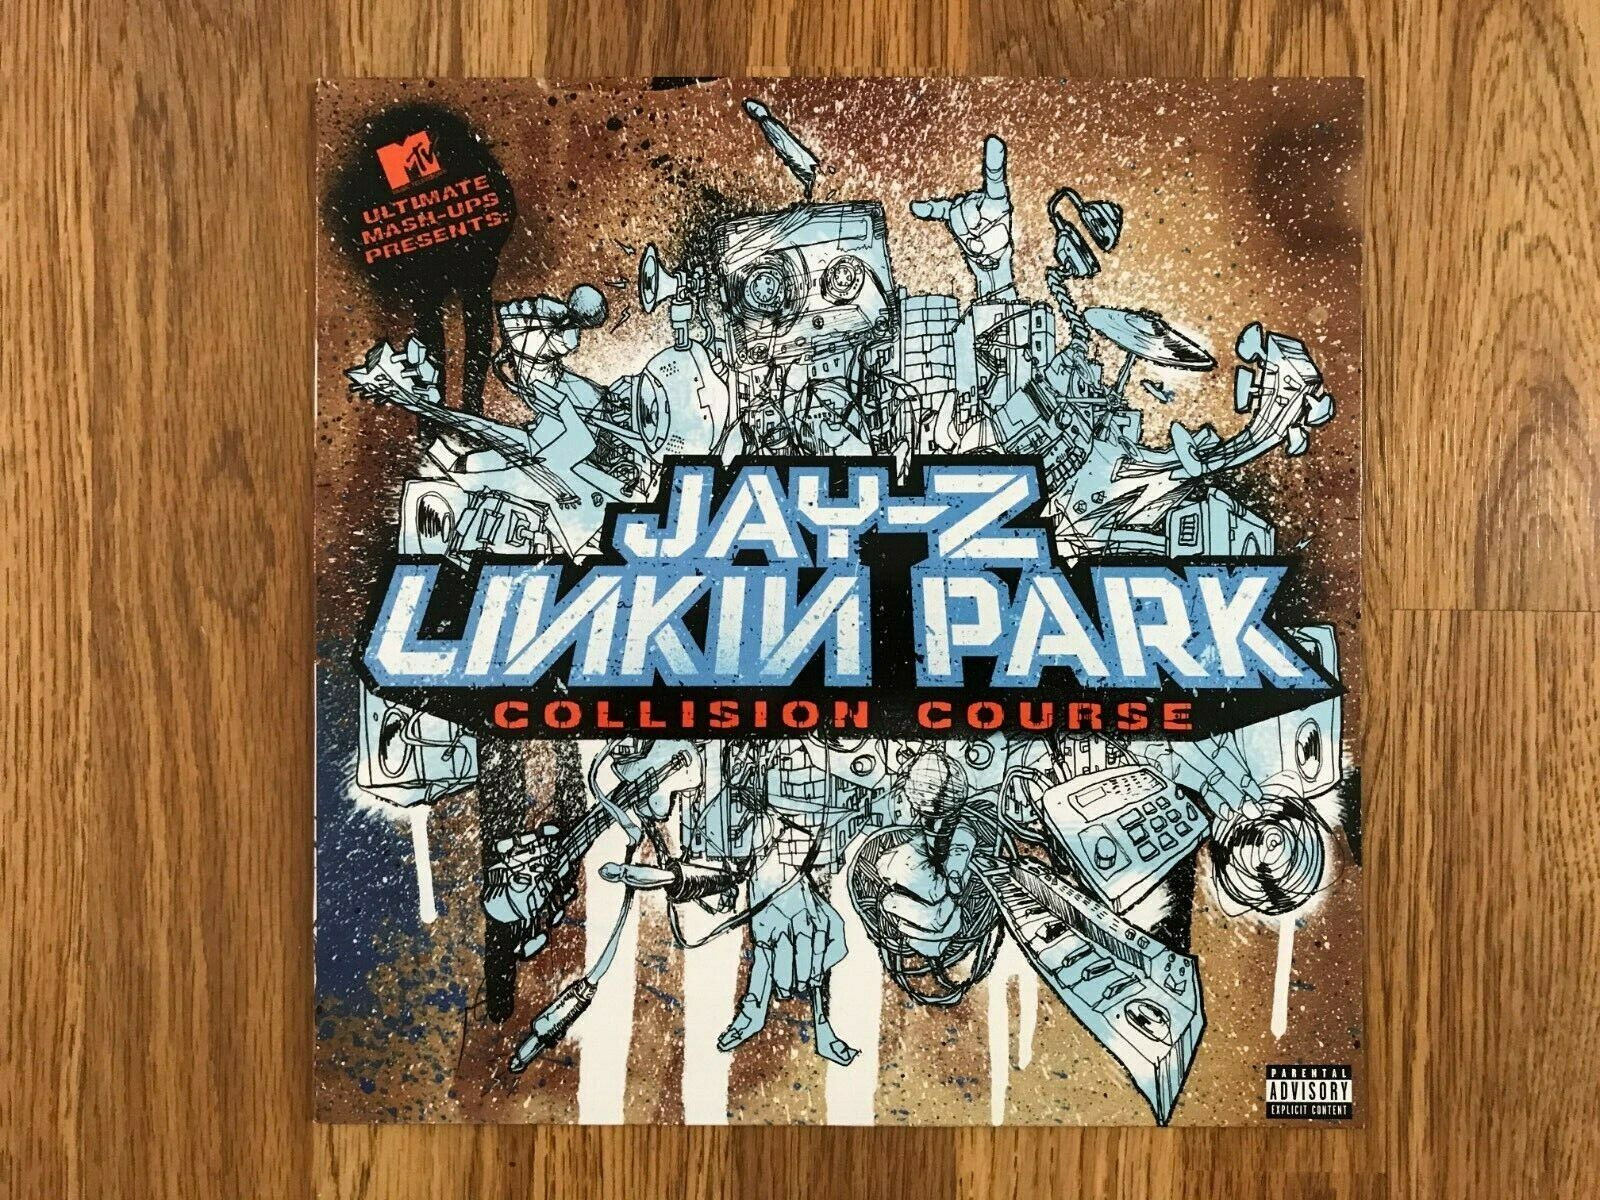 popsike.com - Linkin Park/Jay Z - Collision Course Vinyl LP BLUE